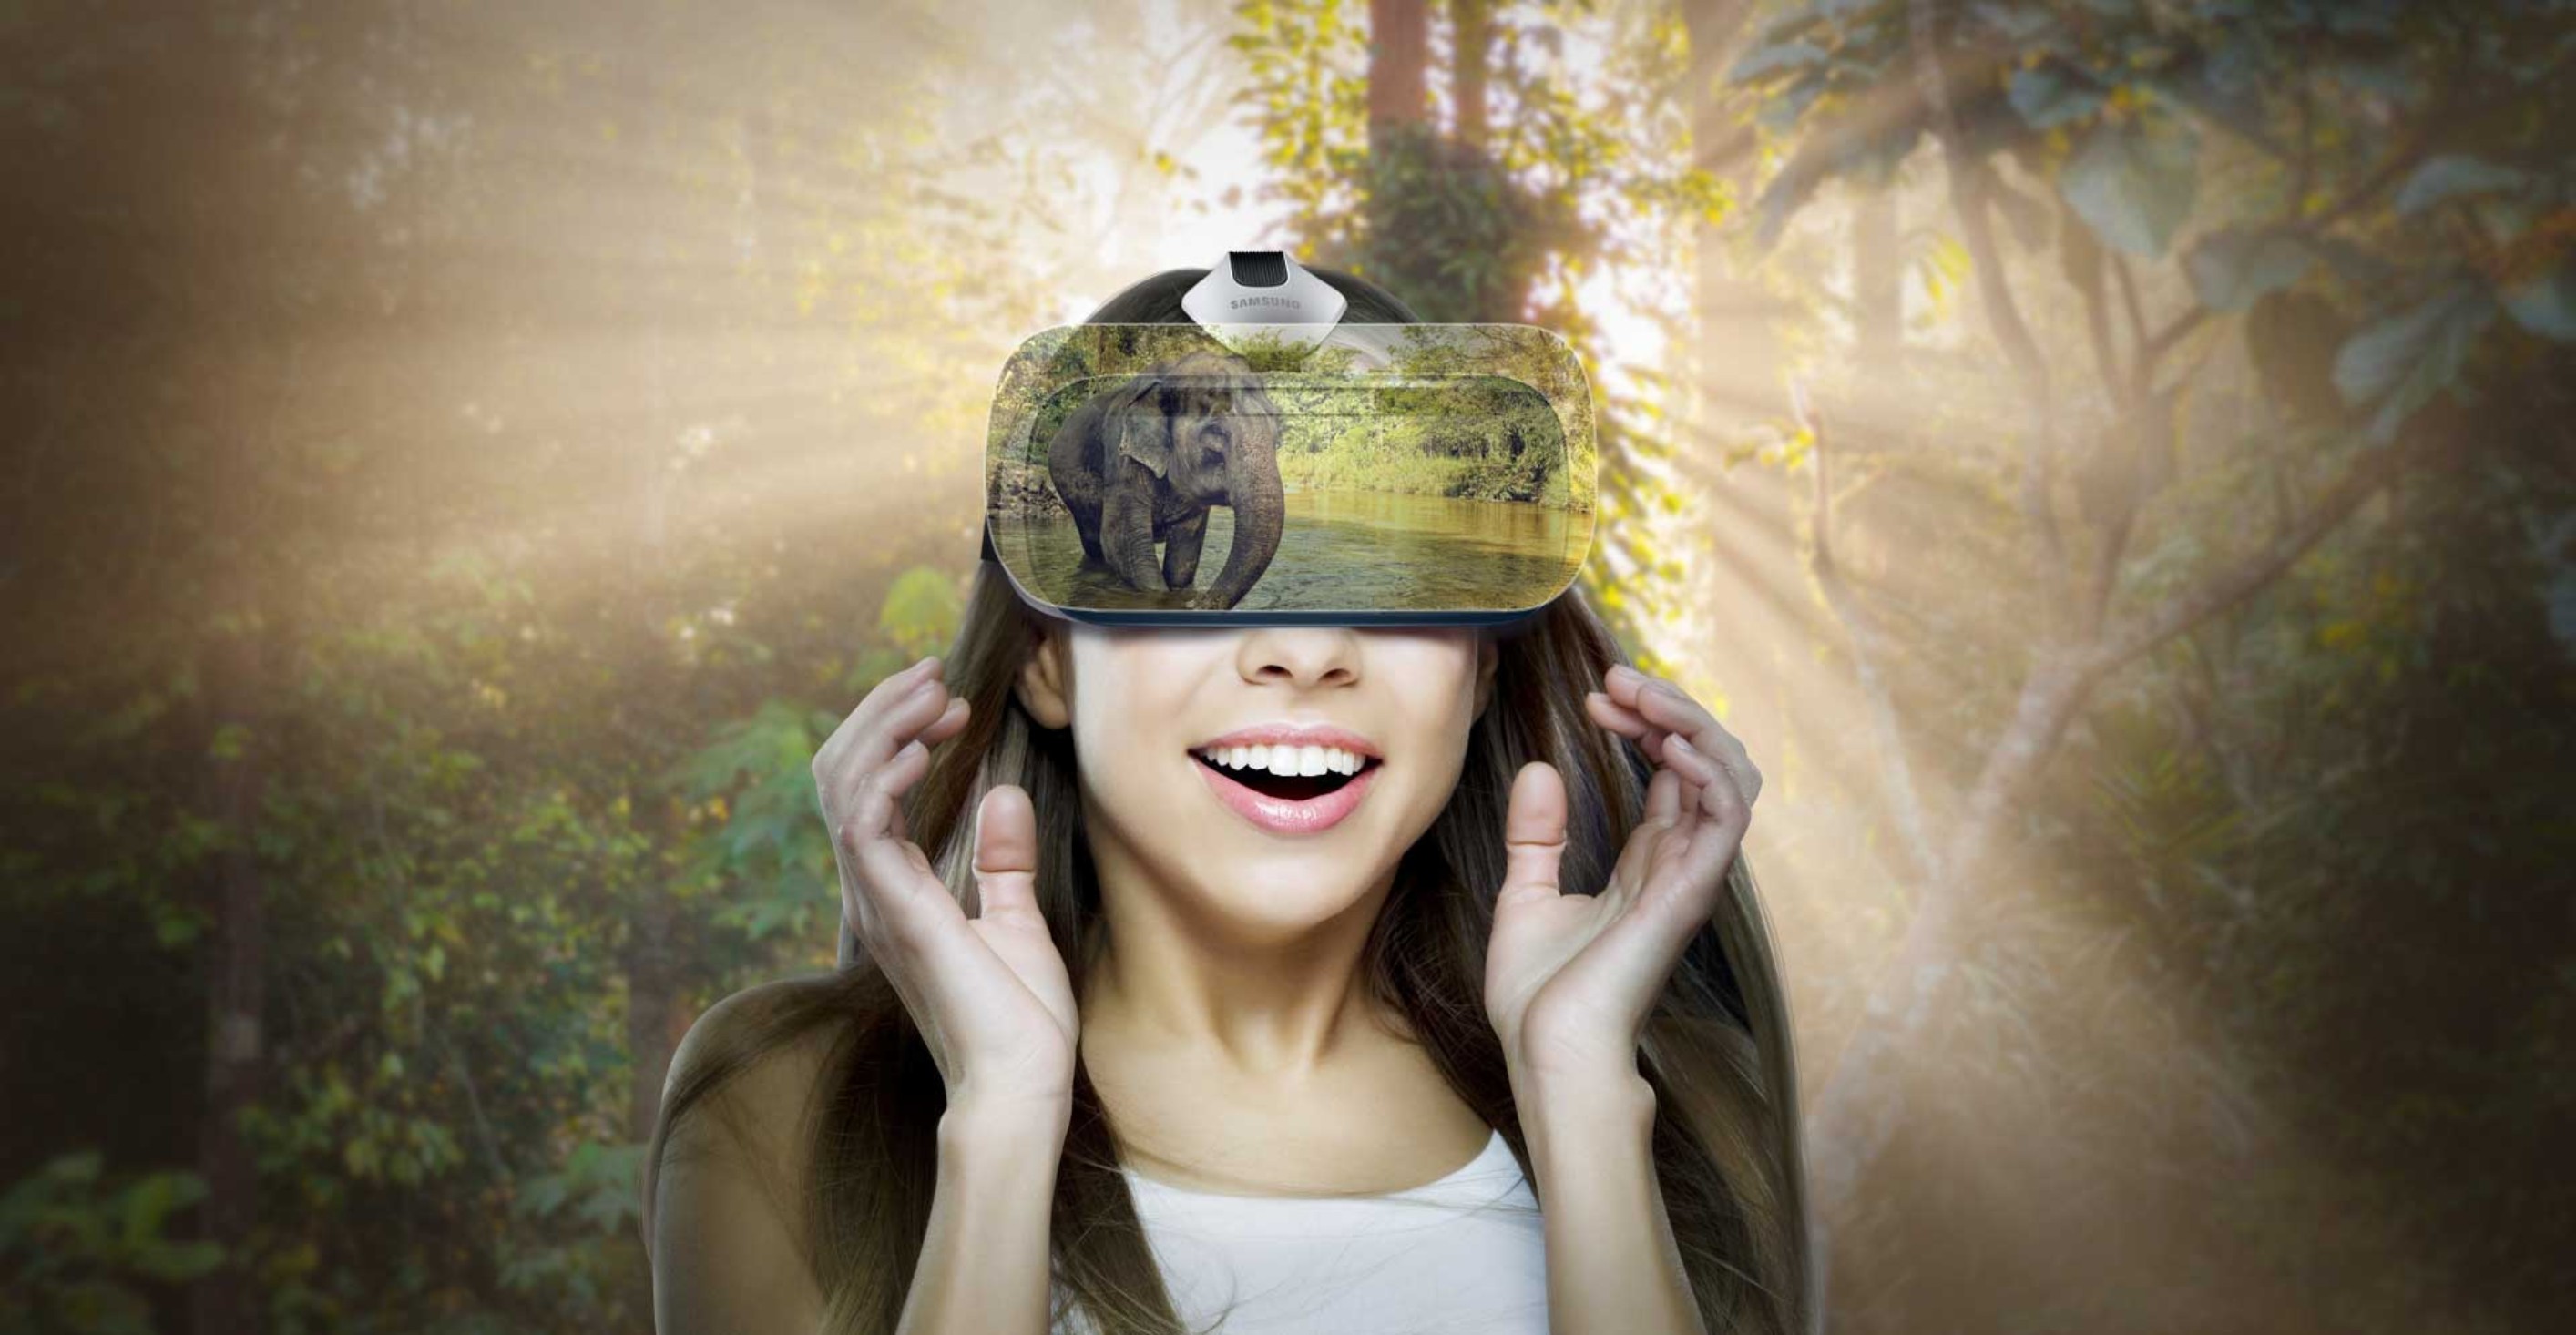 Очки мире игры. Очки виртуальной реальности. Виртуальная реальность девушка. Шлем 3д виртуальная реальность. Девушка в шлеме виртуальной реальности.